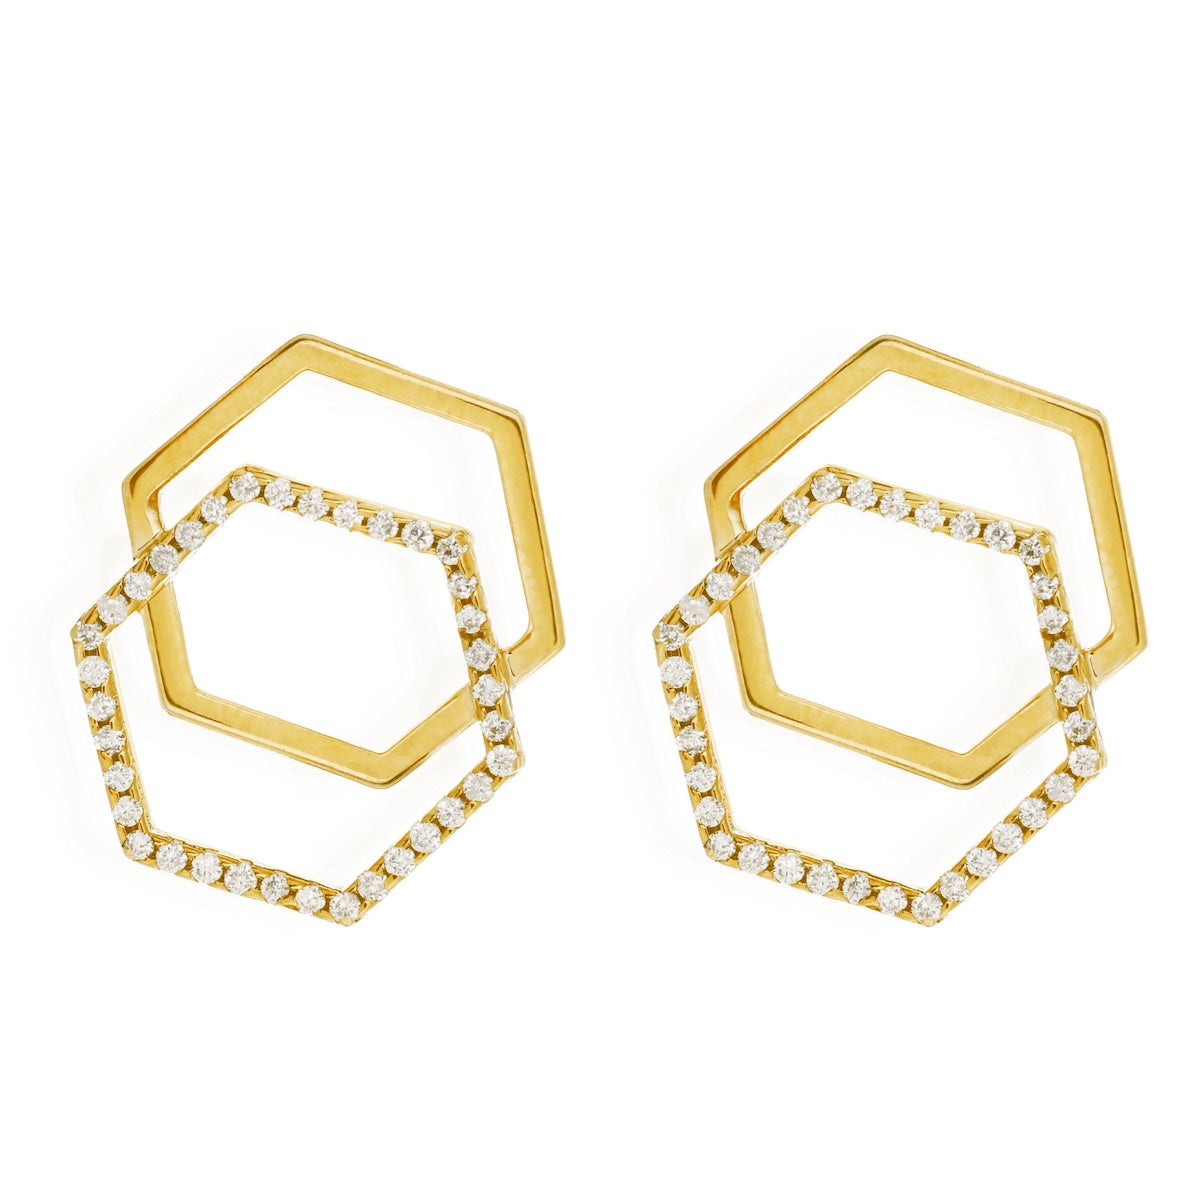 Di-hexa earrings fow women, Jewelry for girlfriend, minimalist jewellery, real gold jewelry, buy gold earrings